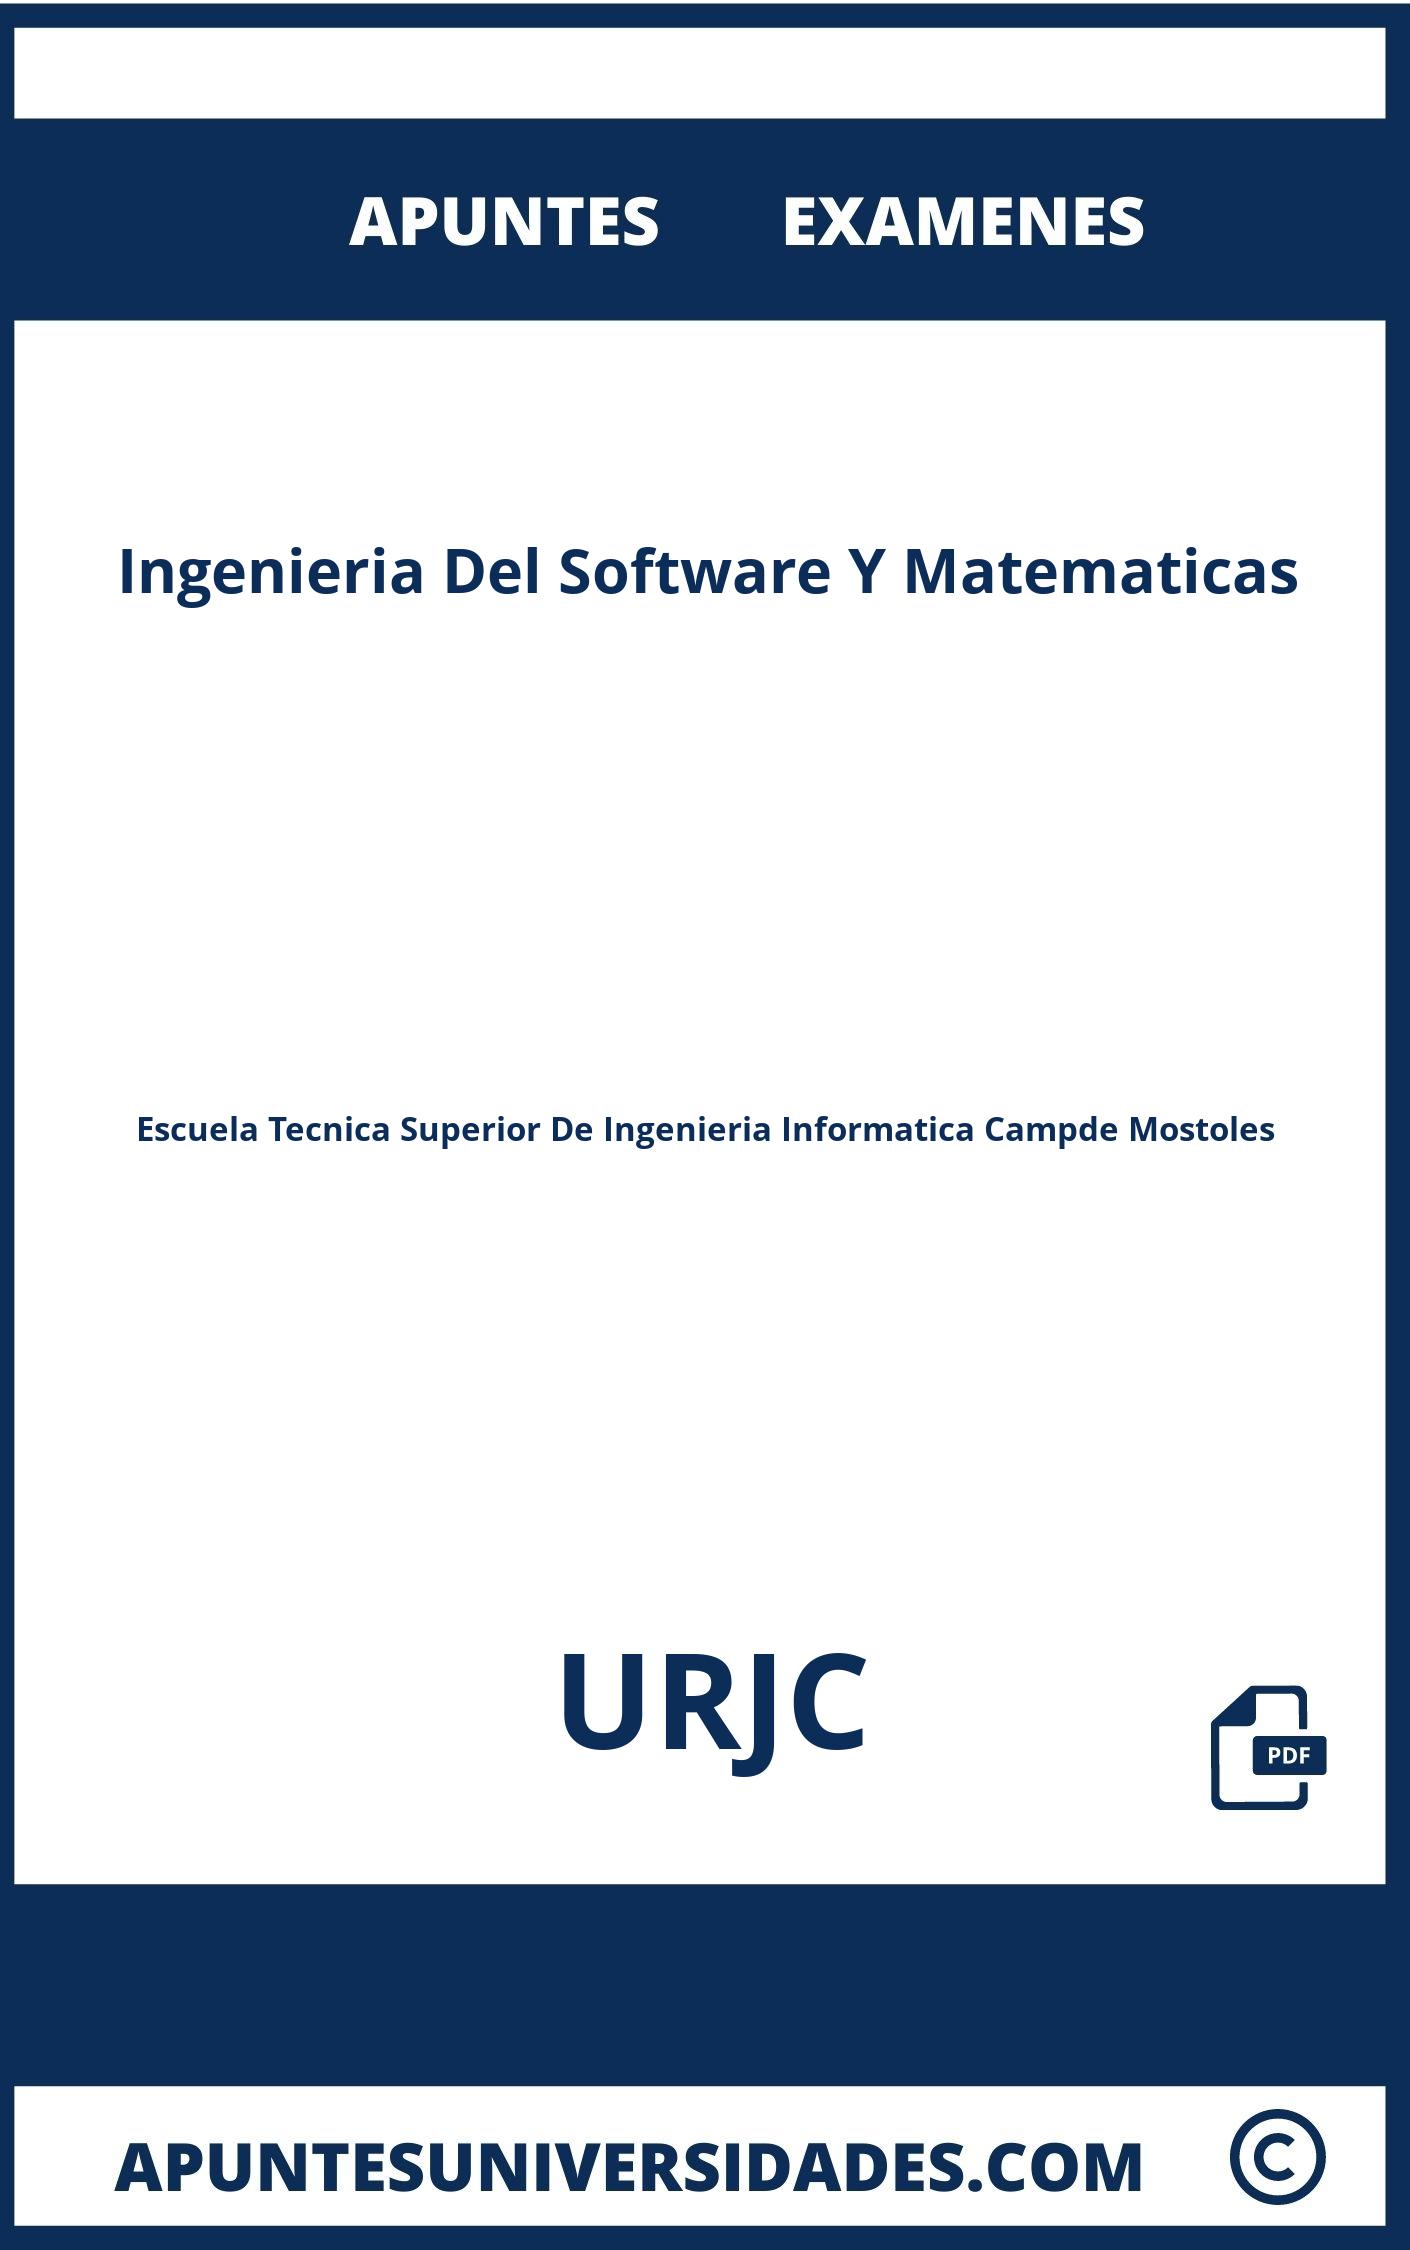 Examenes Ingenieria Del Software Y Matematicas URJC y Apuntes